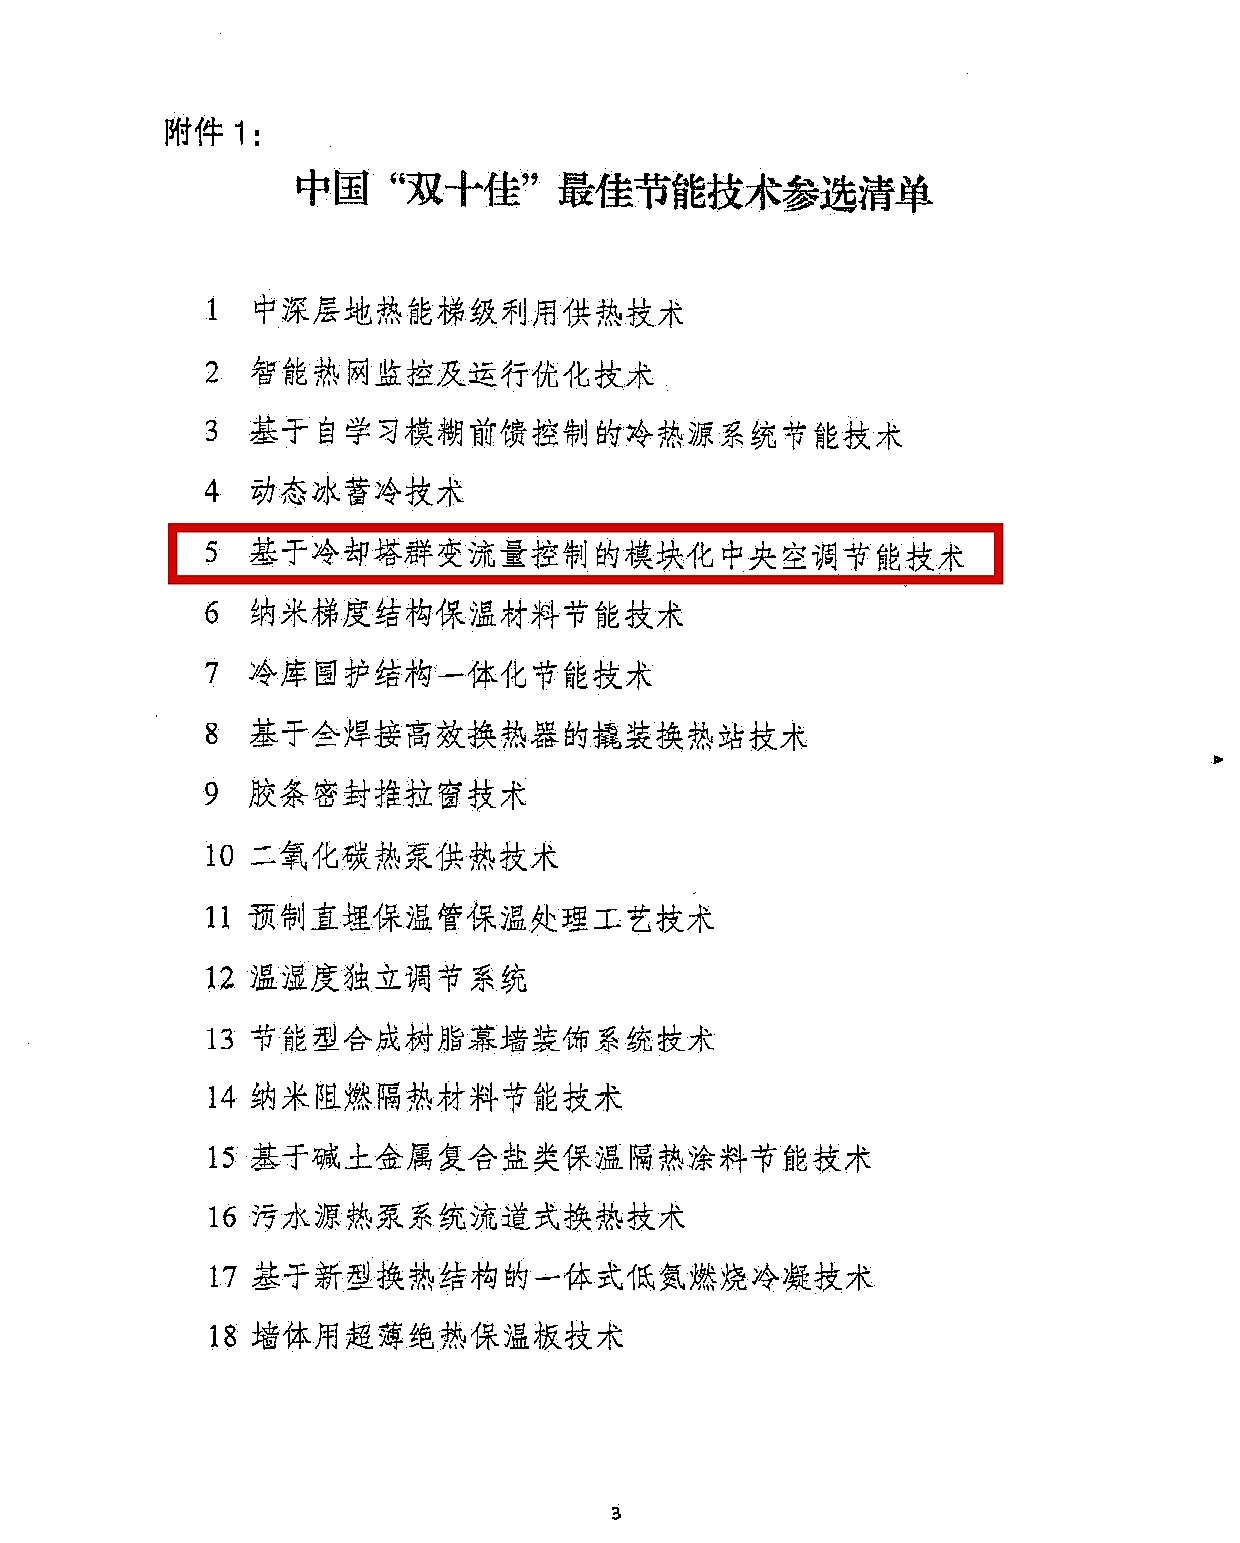 中国“双十佳”最佳节能技术参选评议会通知-建筑_页面_3(1)